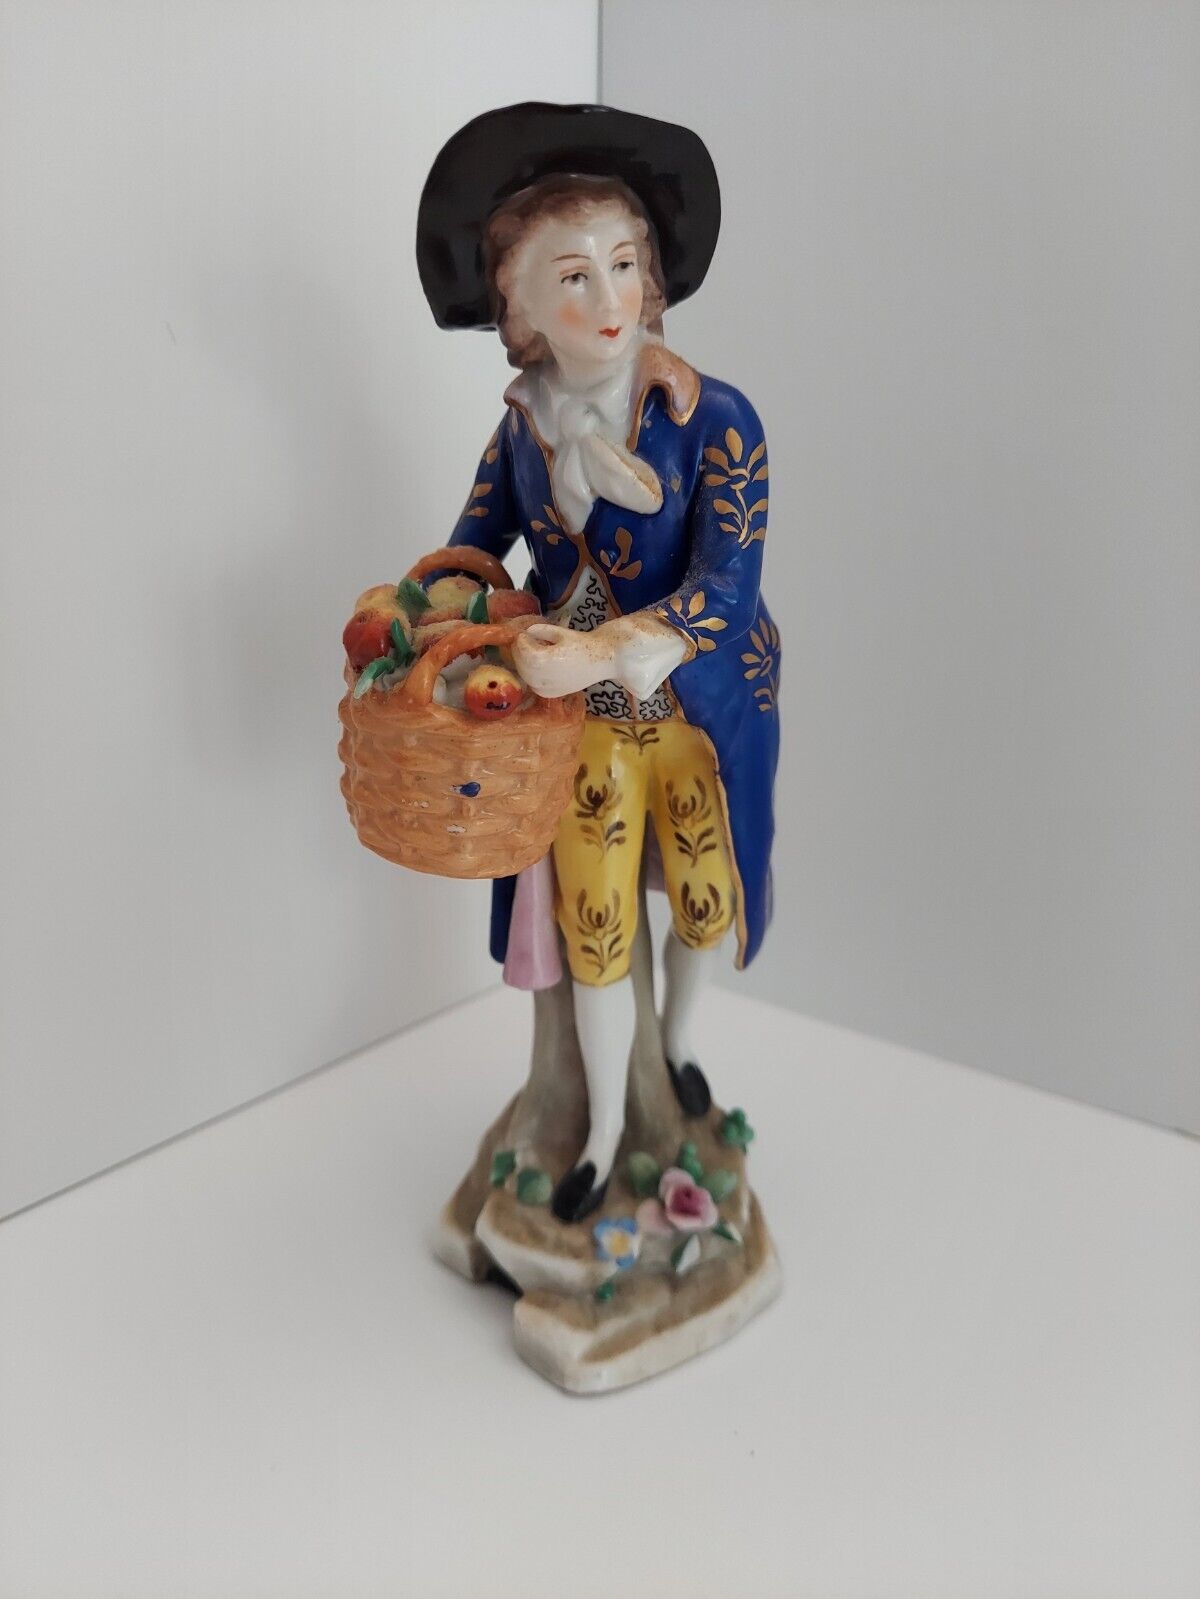  Antique Sitzendorf Germany Porcelain Figurine Gentleman Apple Seller